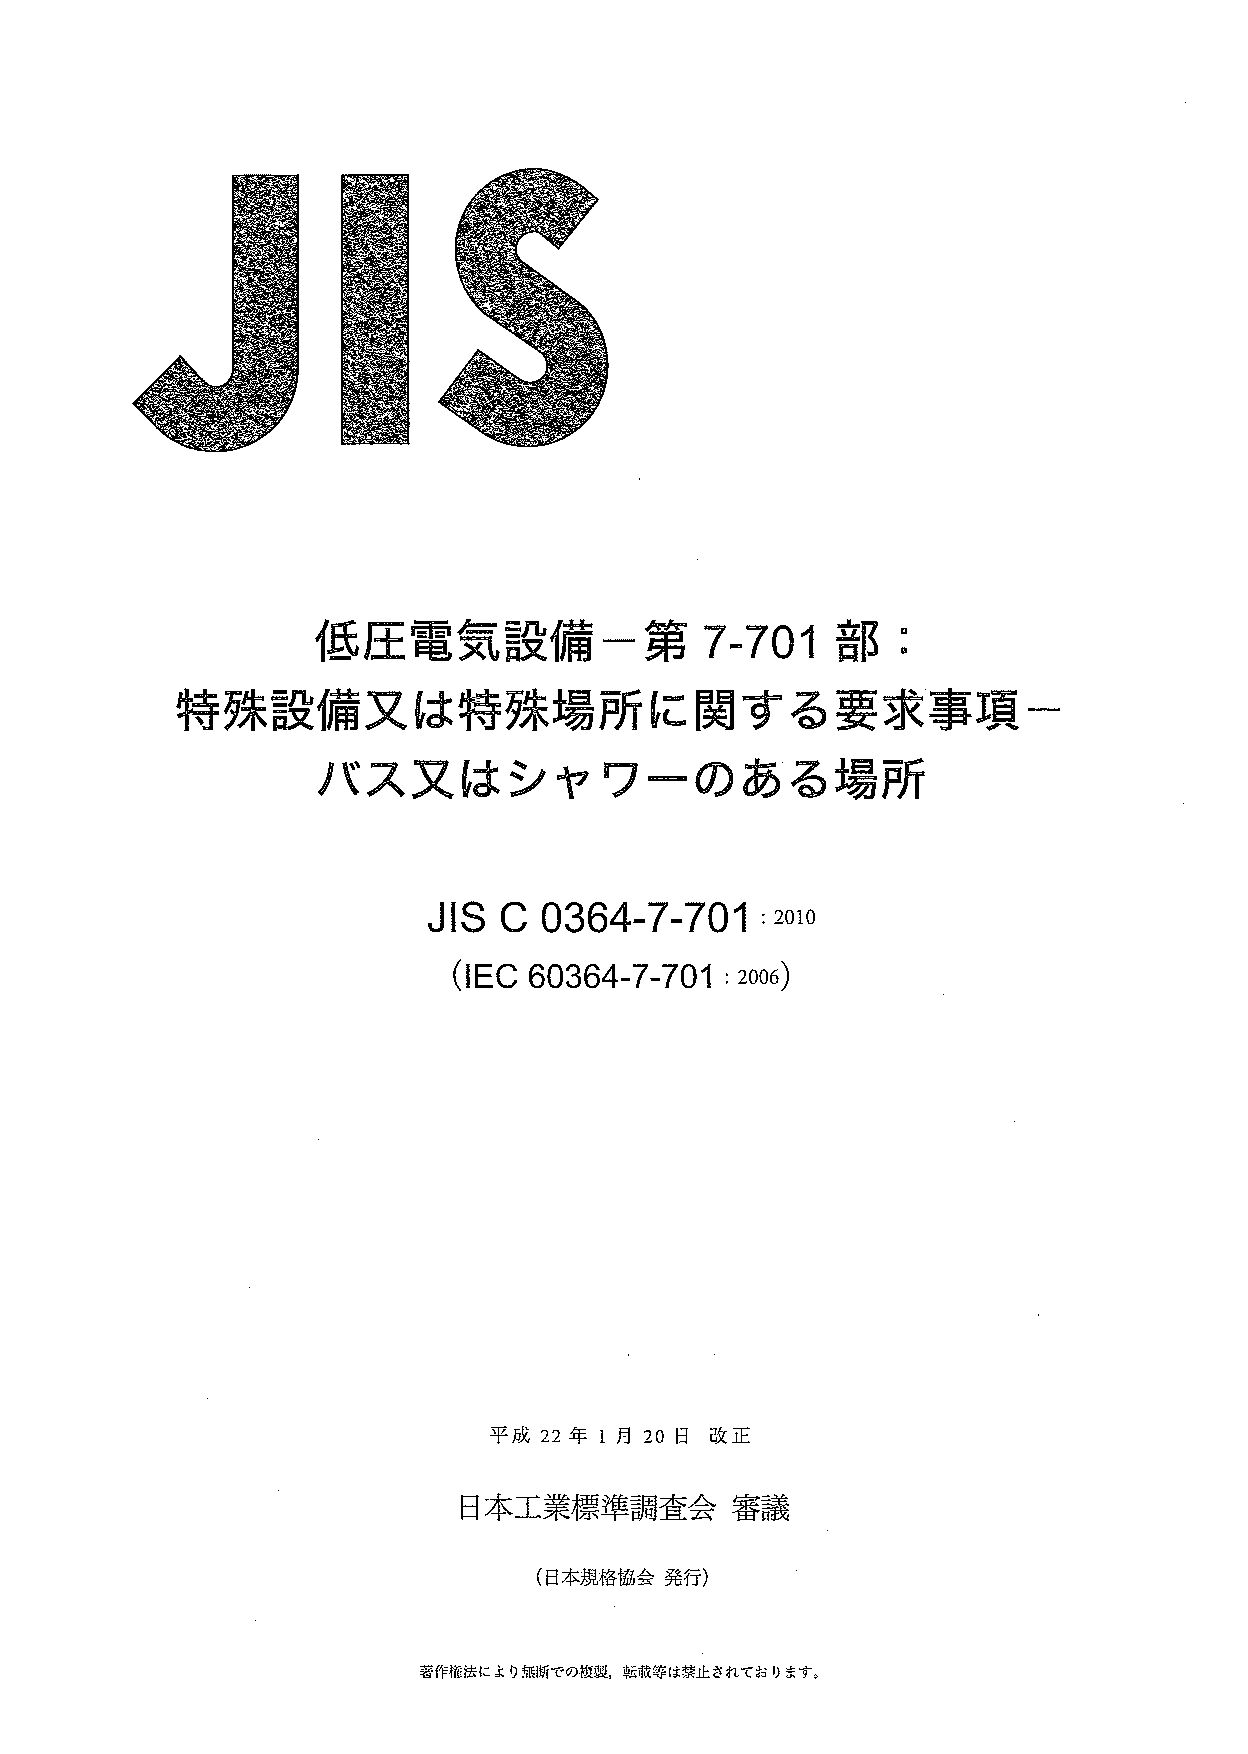 JIS C 0364-7-701:2010封面图